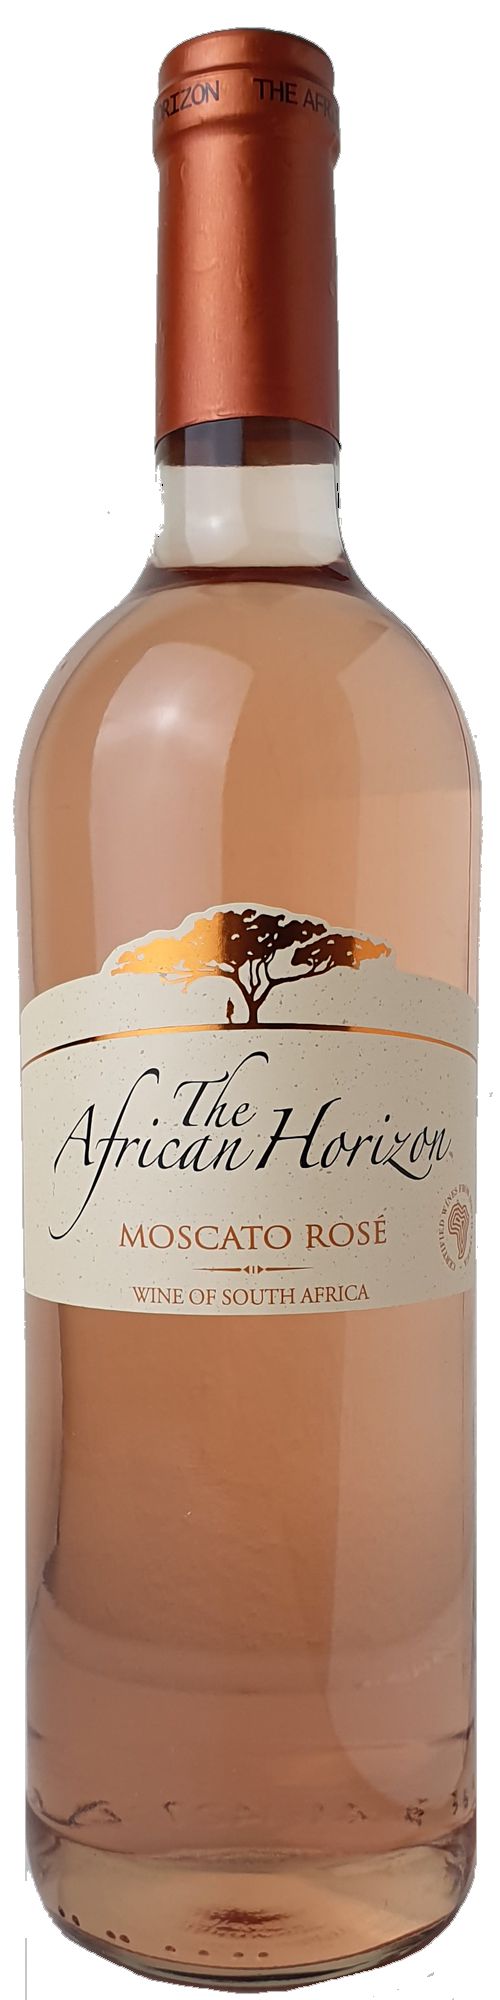 Steffen Westkap Weinagentur Sweet, Rose Moscato Horizon Reinwarth African –